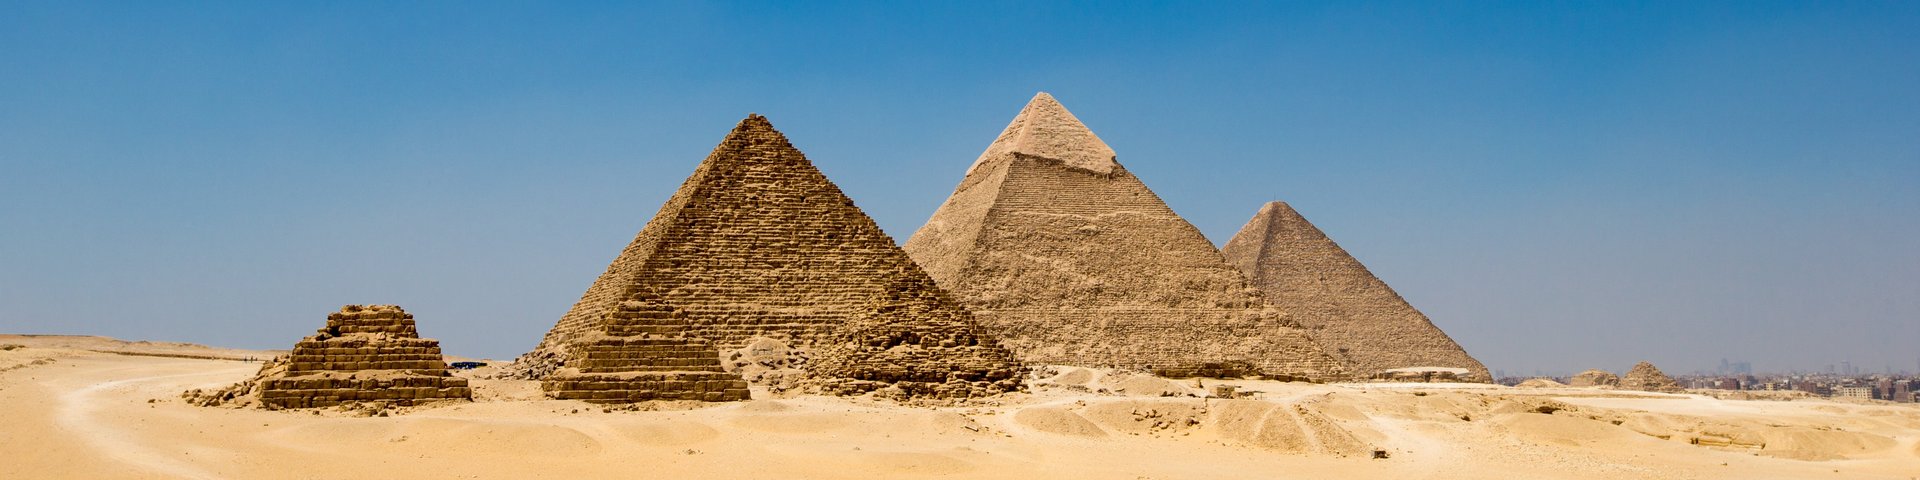 Pyramiden von Gyzeh in Ägypten